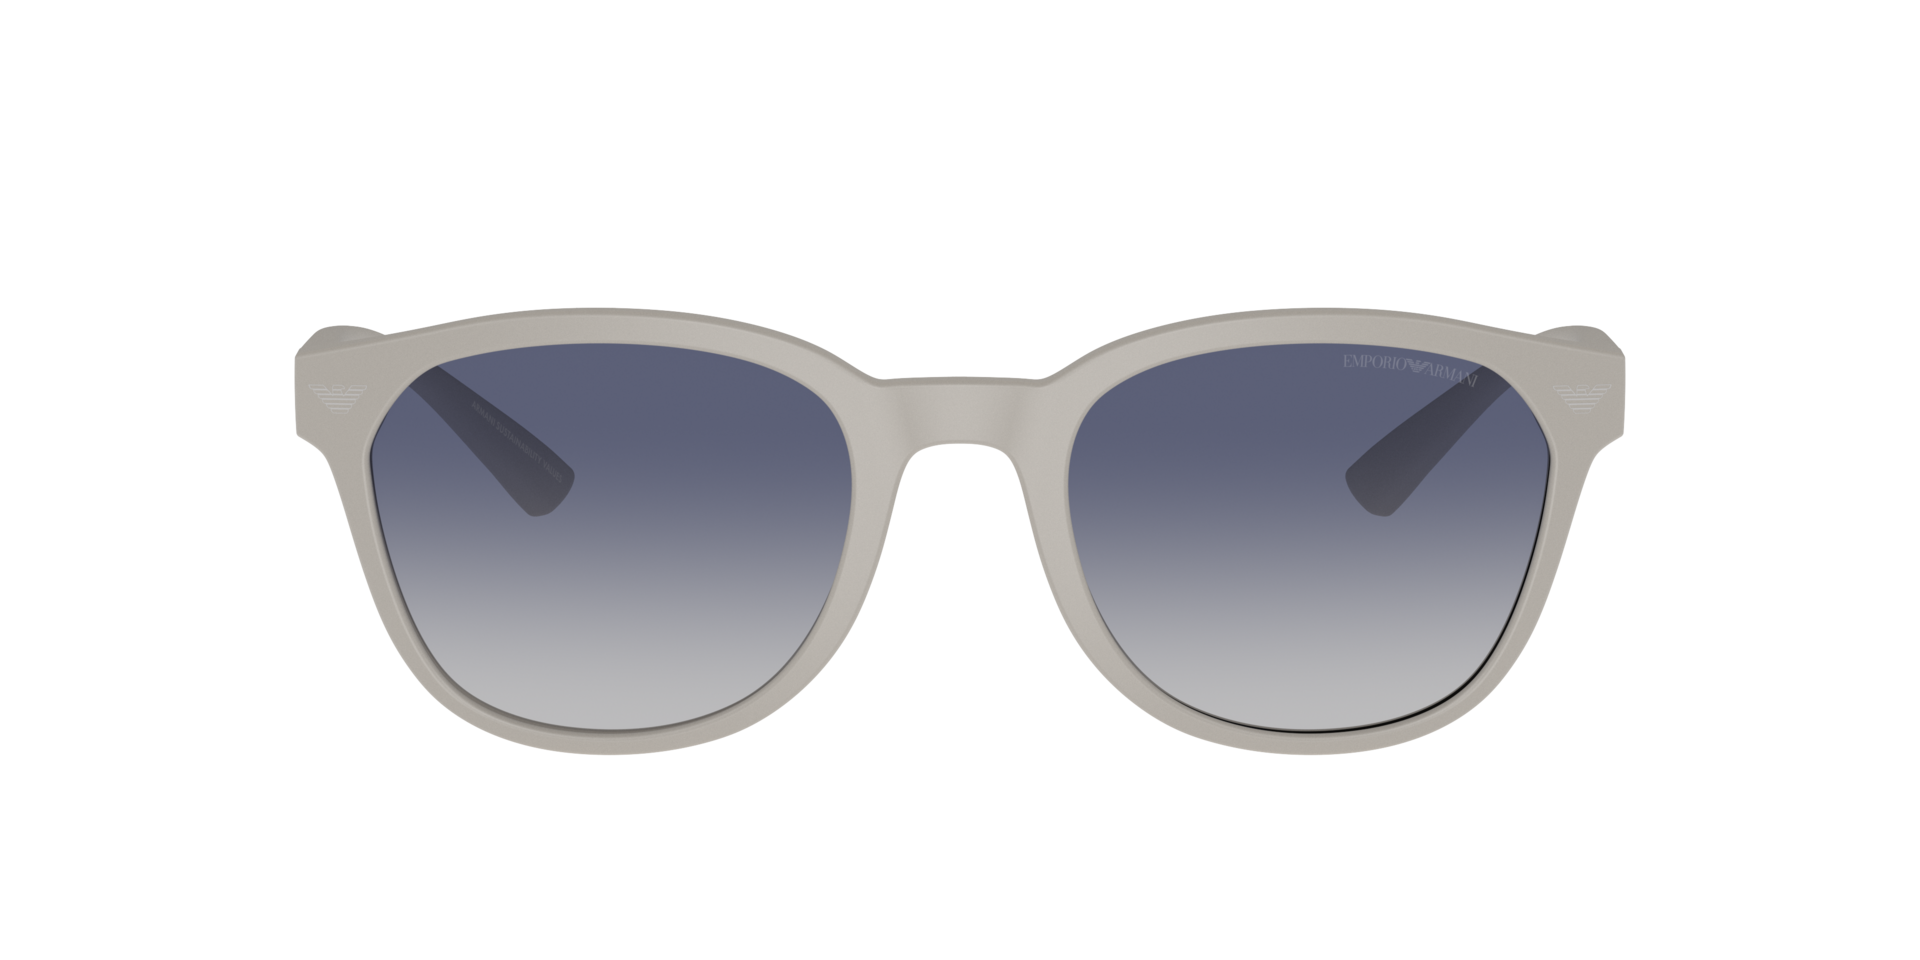 Das Bild zeigt die Sonnenbrille EA4225U 610087 von der Marke Emporio Armani in hellgrau.